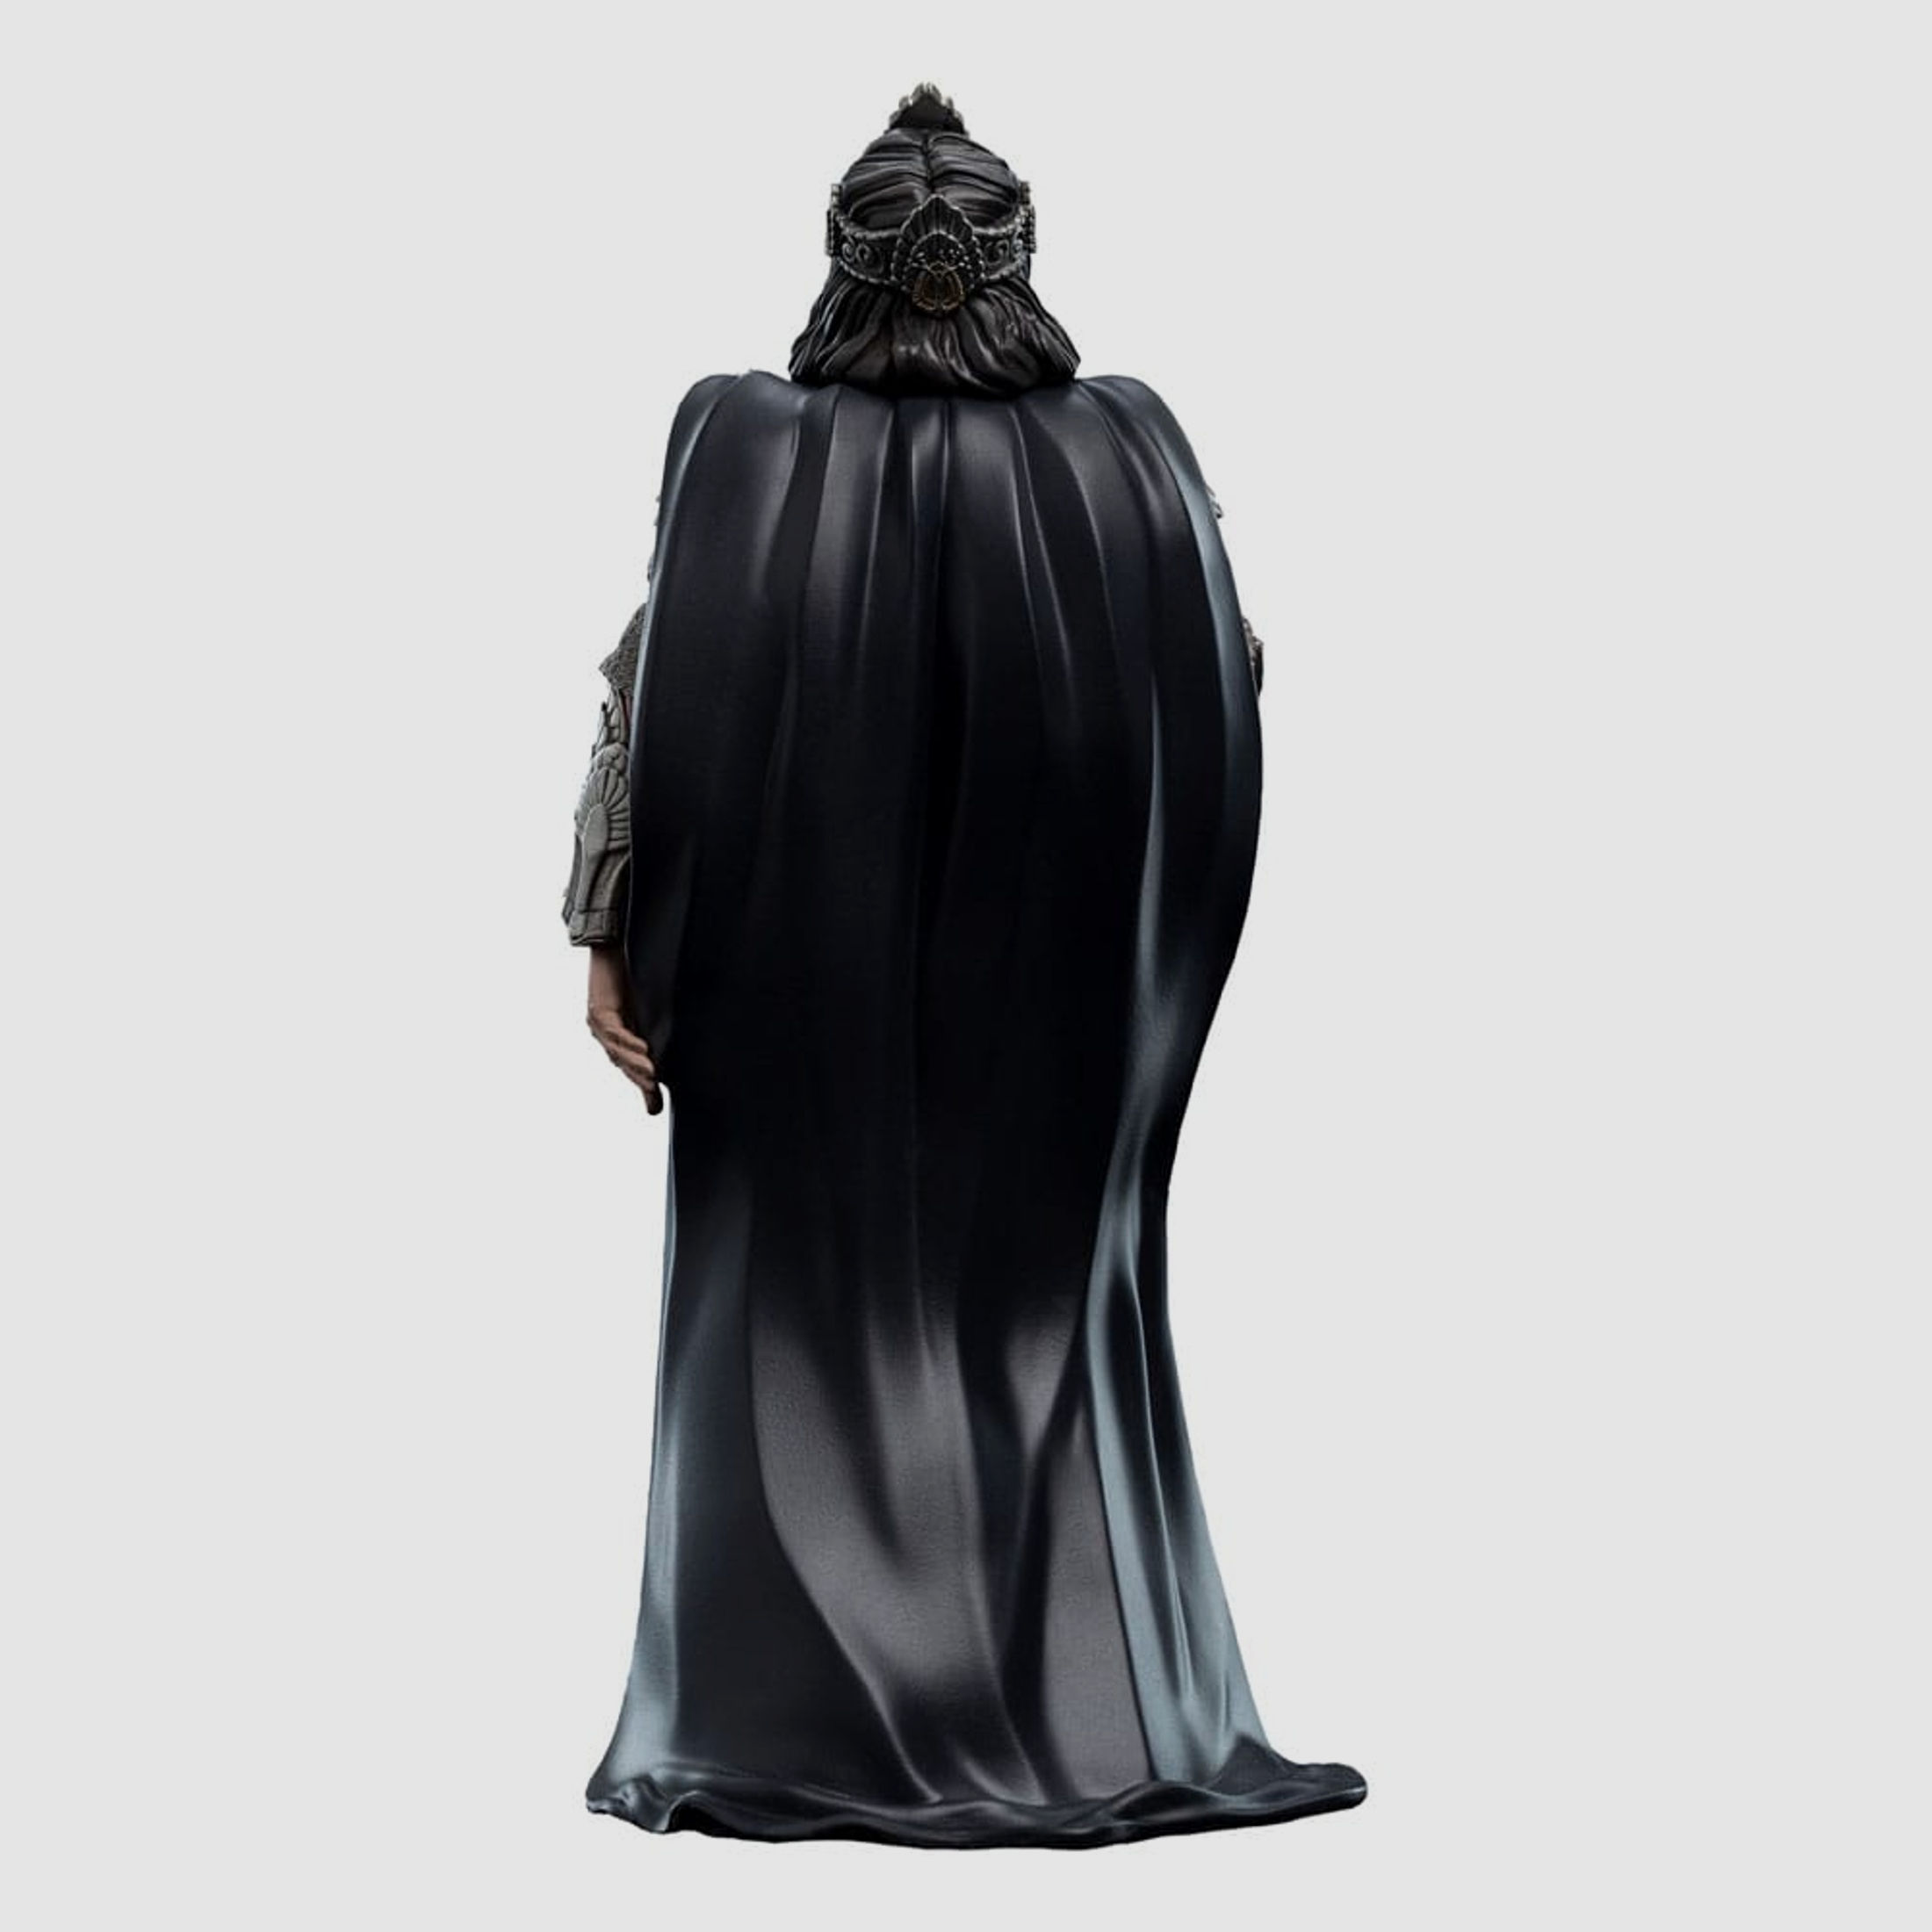 Herr der Ringe Mini Epics Vinyl Figur King Aragorn 19 cm | 42832